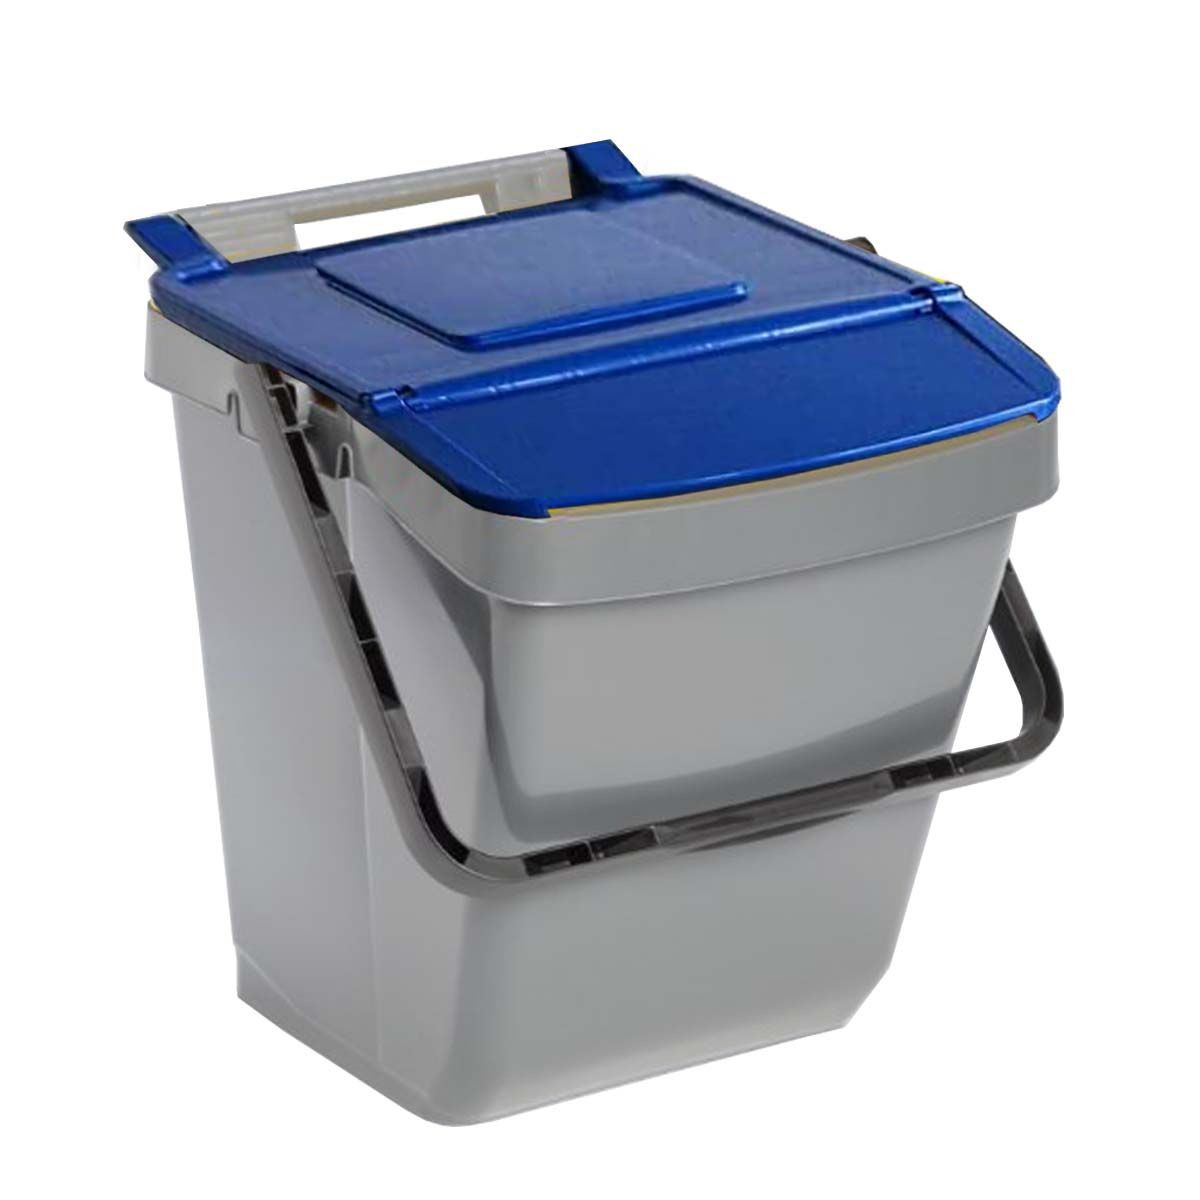 Bac à ordures - bac de recyclage - bac de déchets - 30 litres